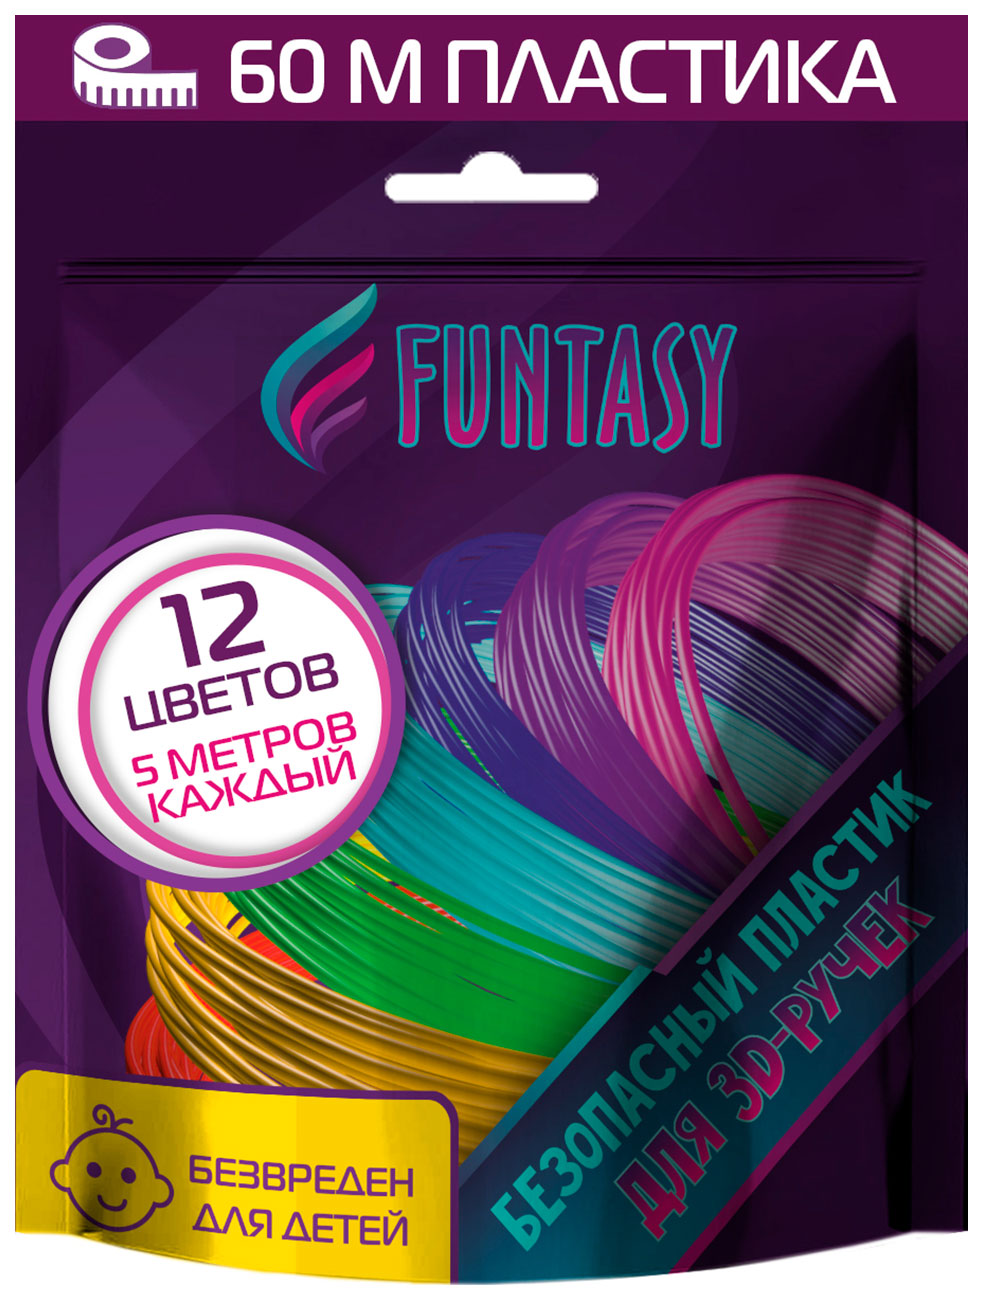 Набор PLA-пластика для 3д ручек Funtasy 12 цветов по 5 метров наборы для творчества honya набор пластика abs 6 различных цветов по 12 м